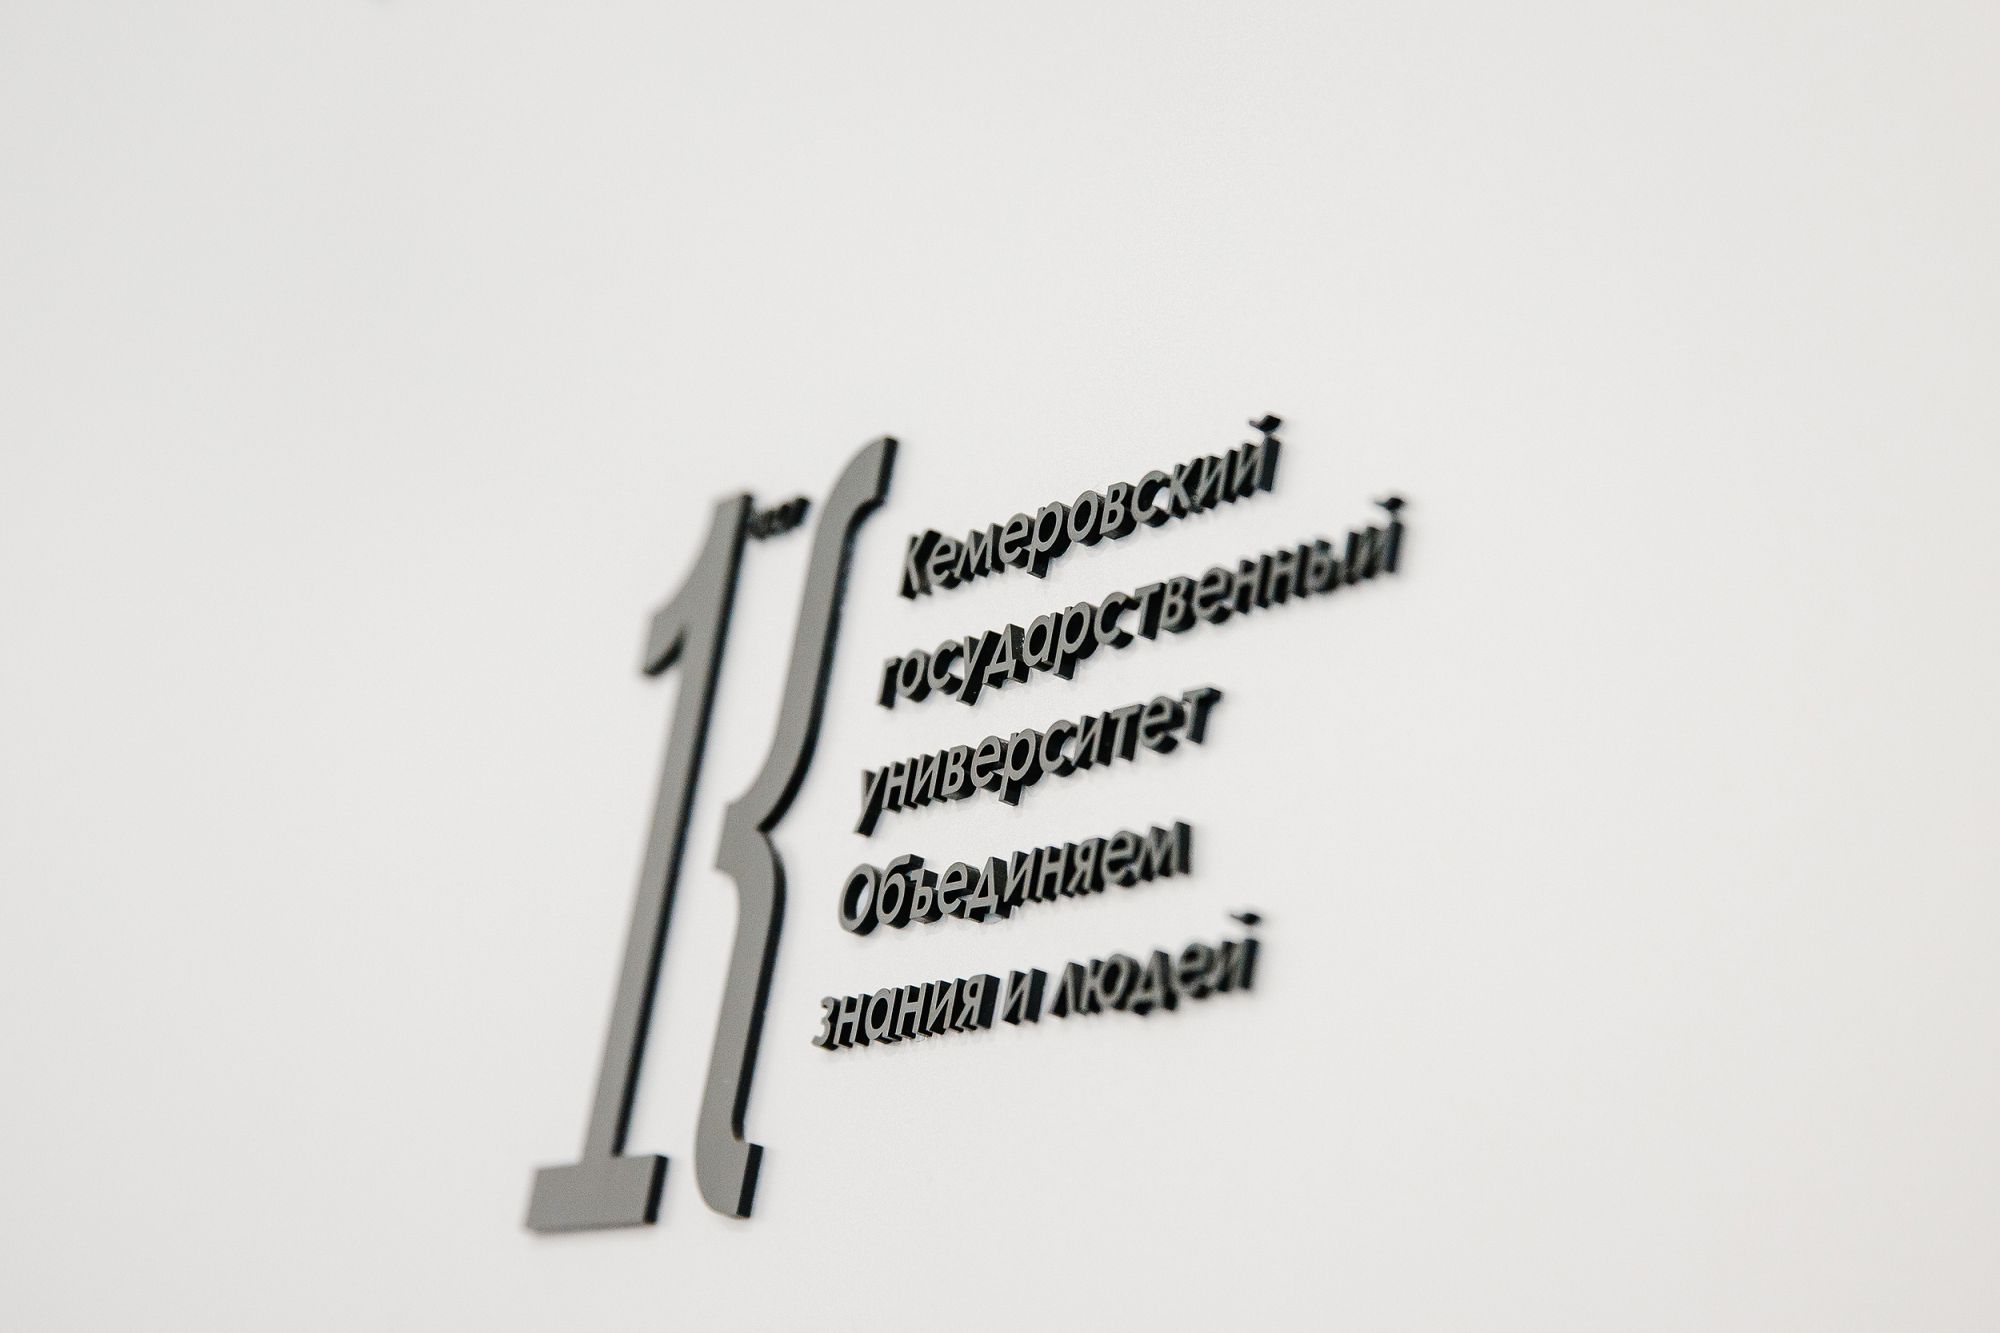 Кемеровский государственный университет вошел в тройку лучших вузов страны по итогам Всероссийской акции по сбору макулатуры